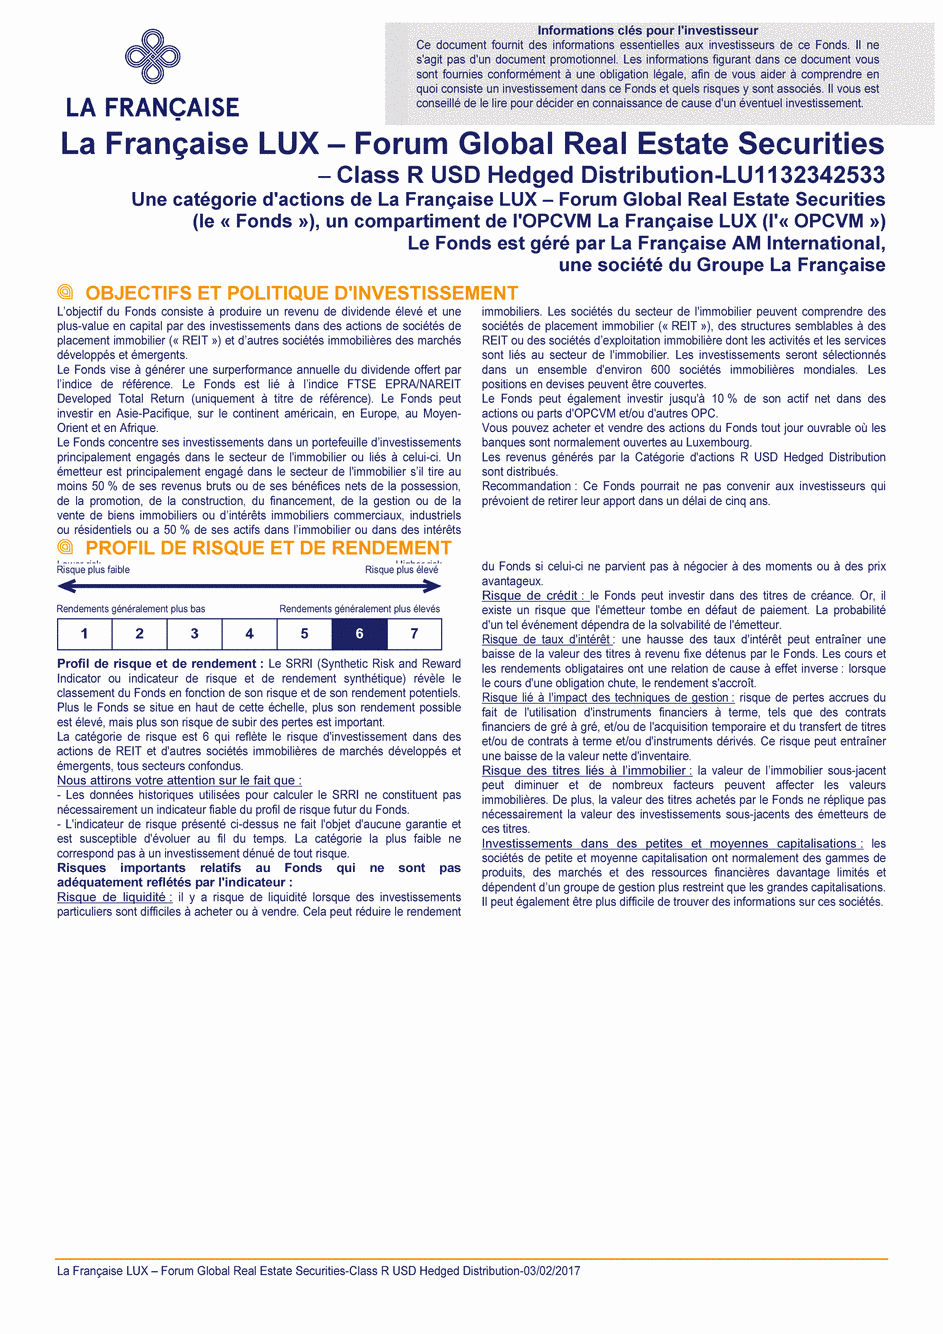 DICI La Française LUX - Forum Global Real Estate Securities - R (D) USD H - 03/02/2017 - Français